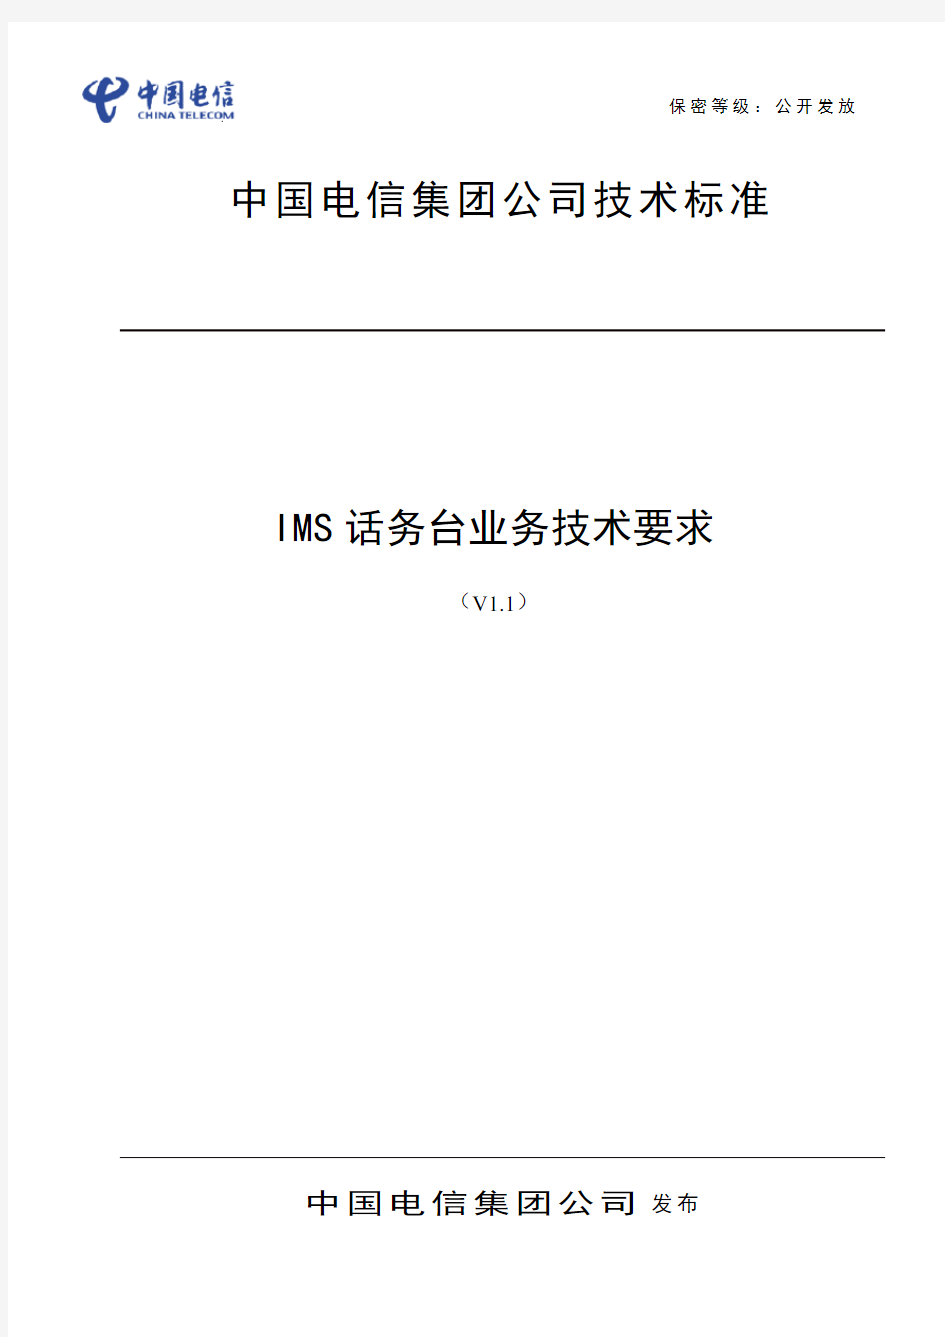 中国电信IMS网络话务台业务技术要求v2.1(201405)